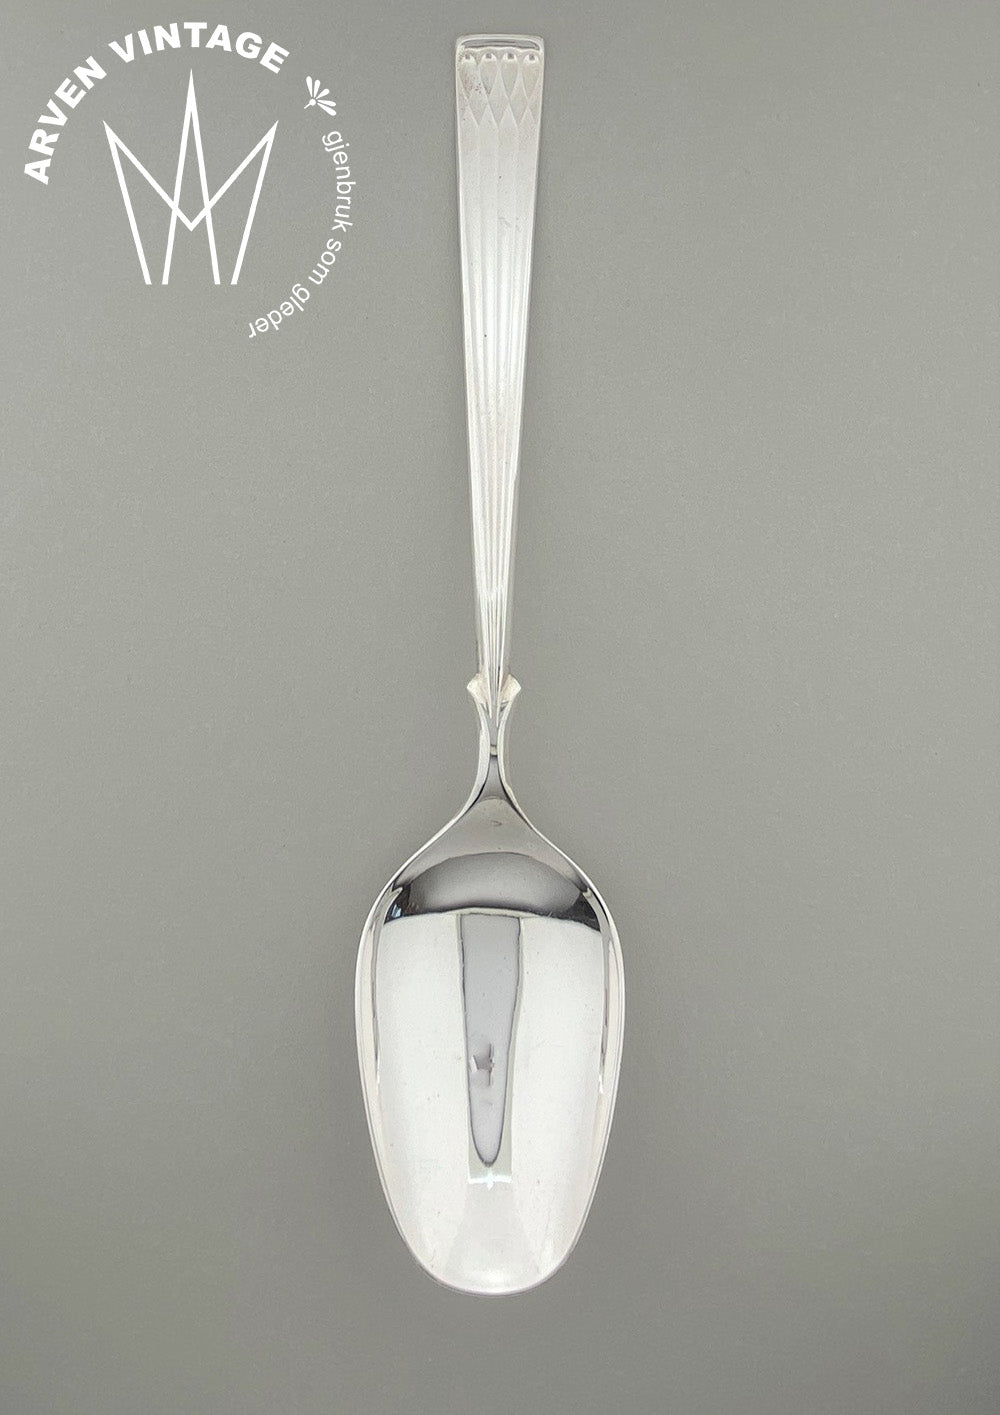 Vintage Heirloom silver serving spoon